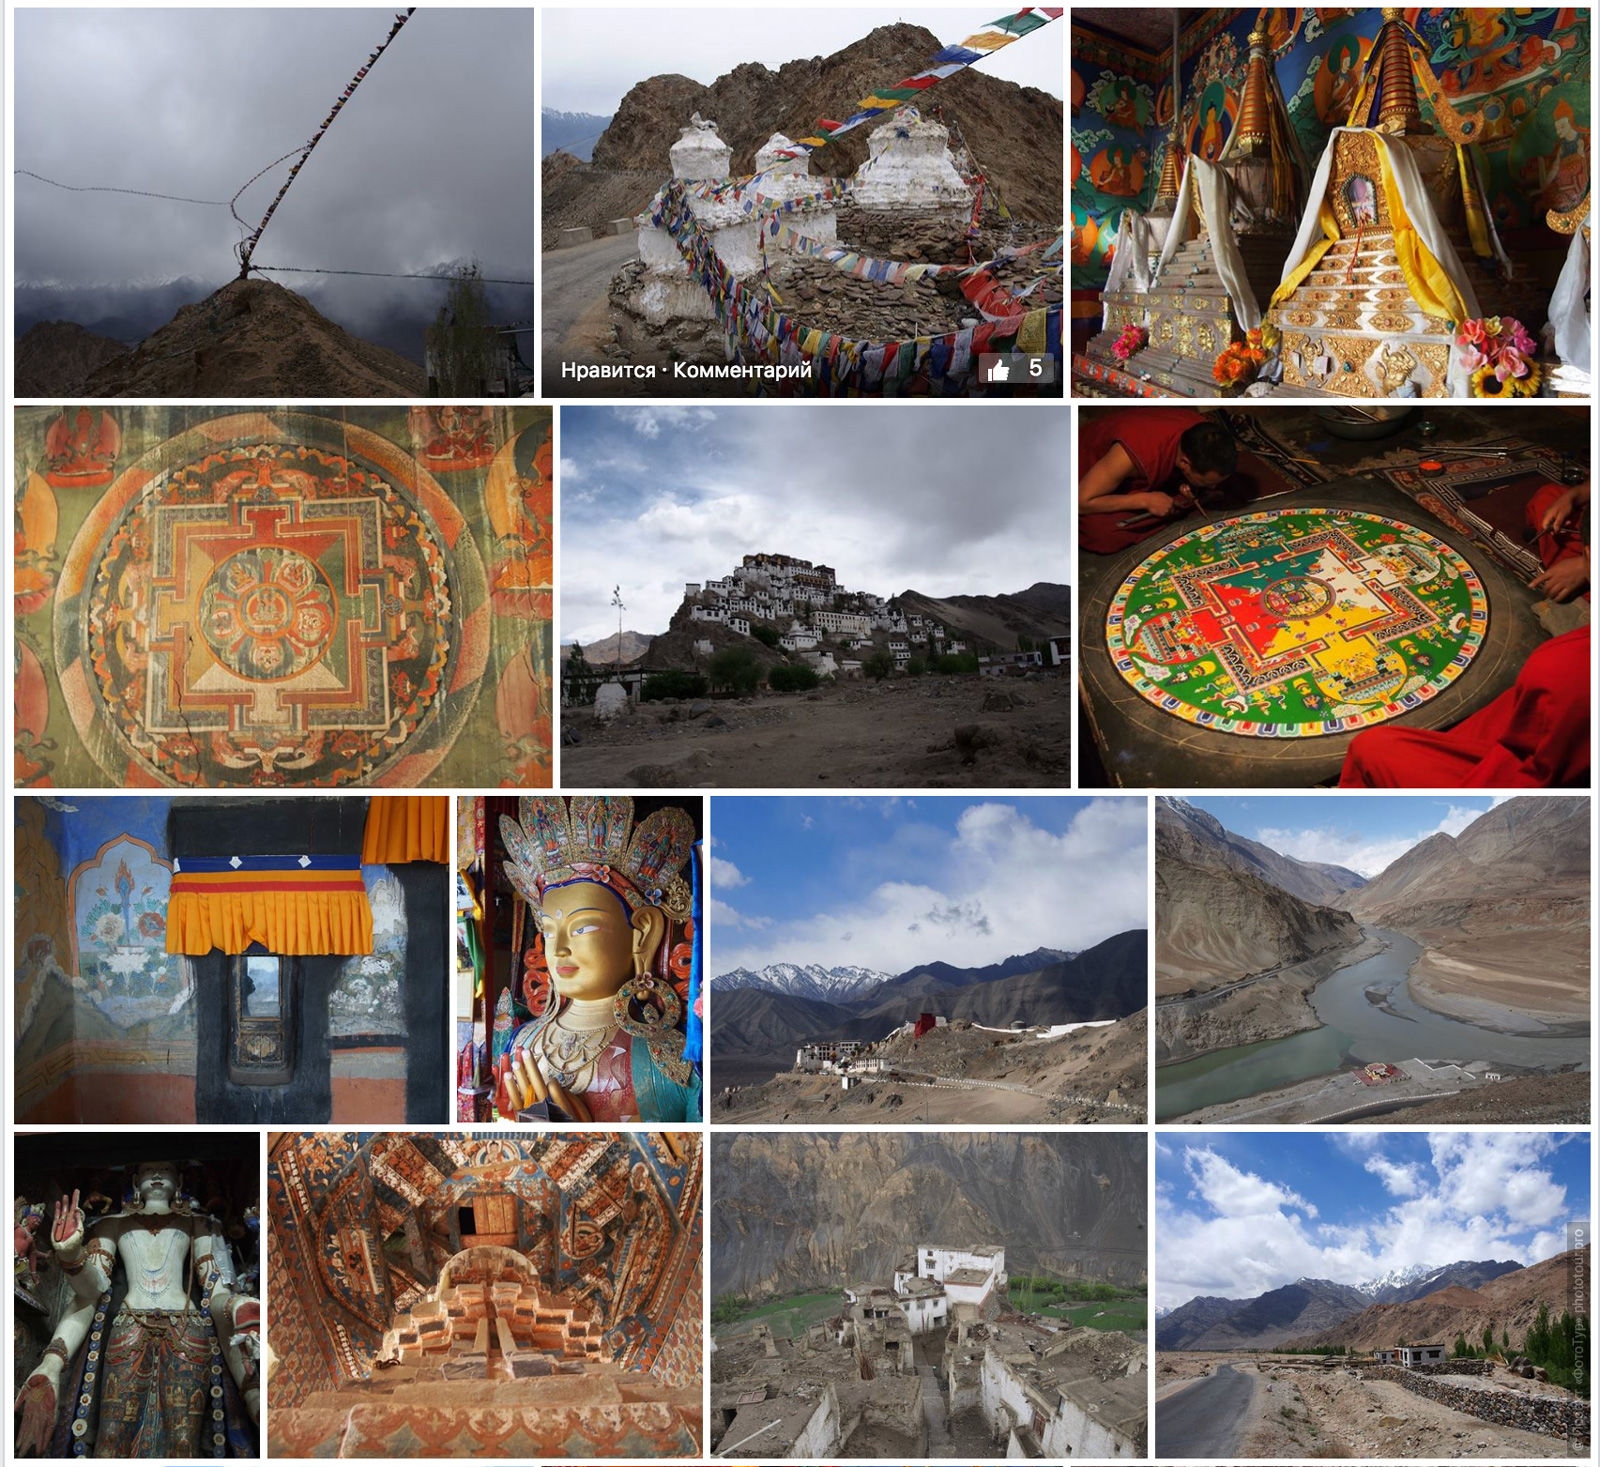 Фототур по Ладакху, сентябрь 2017 года, Тибет, Северная Индия.